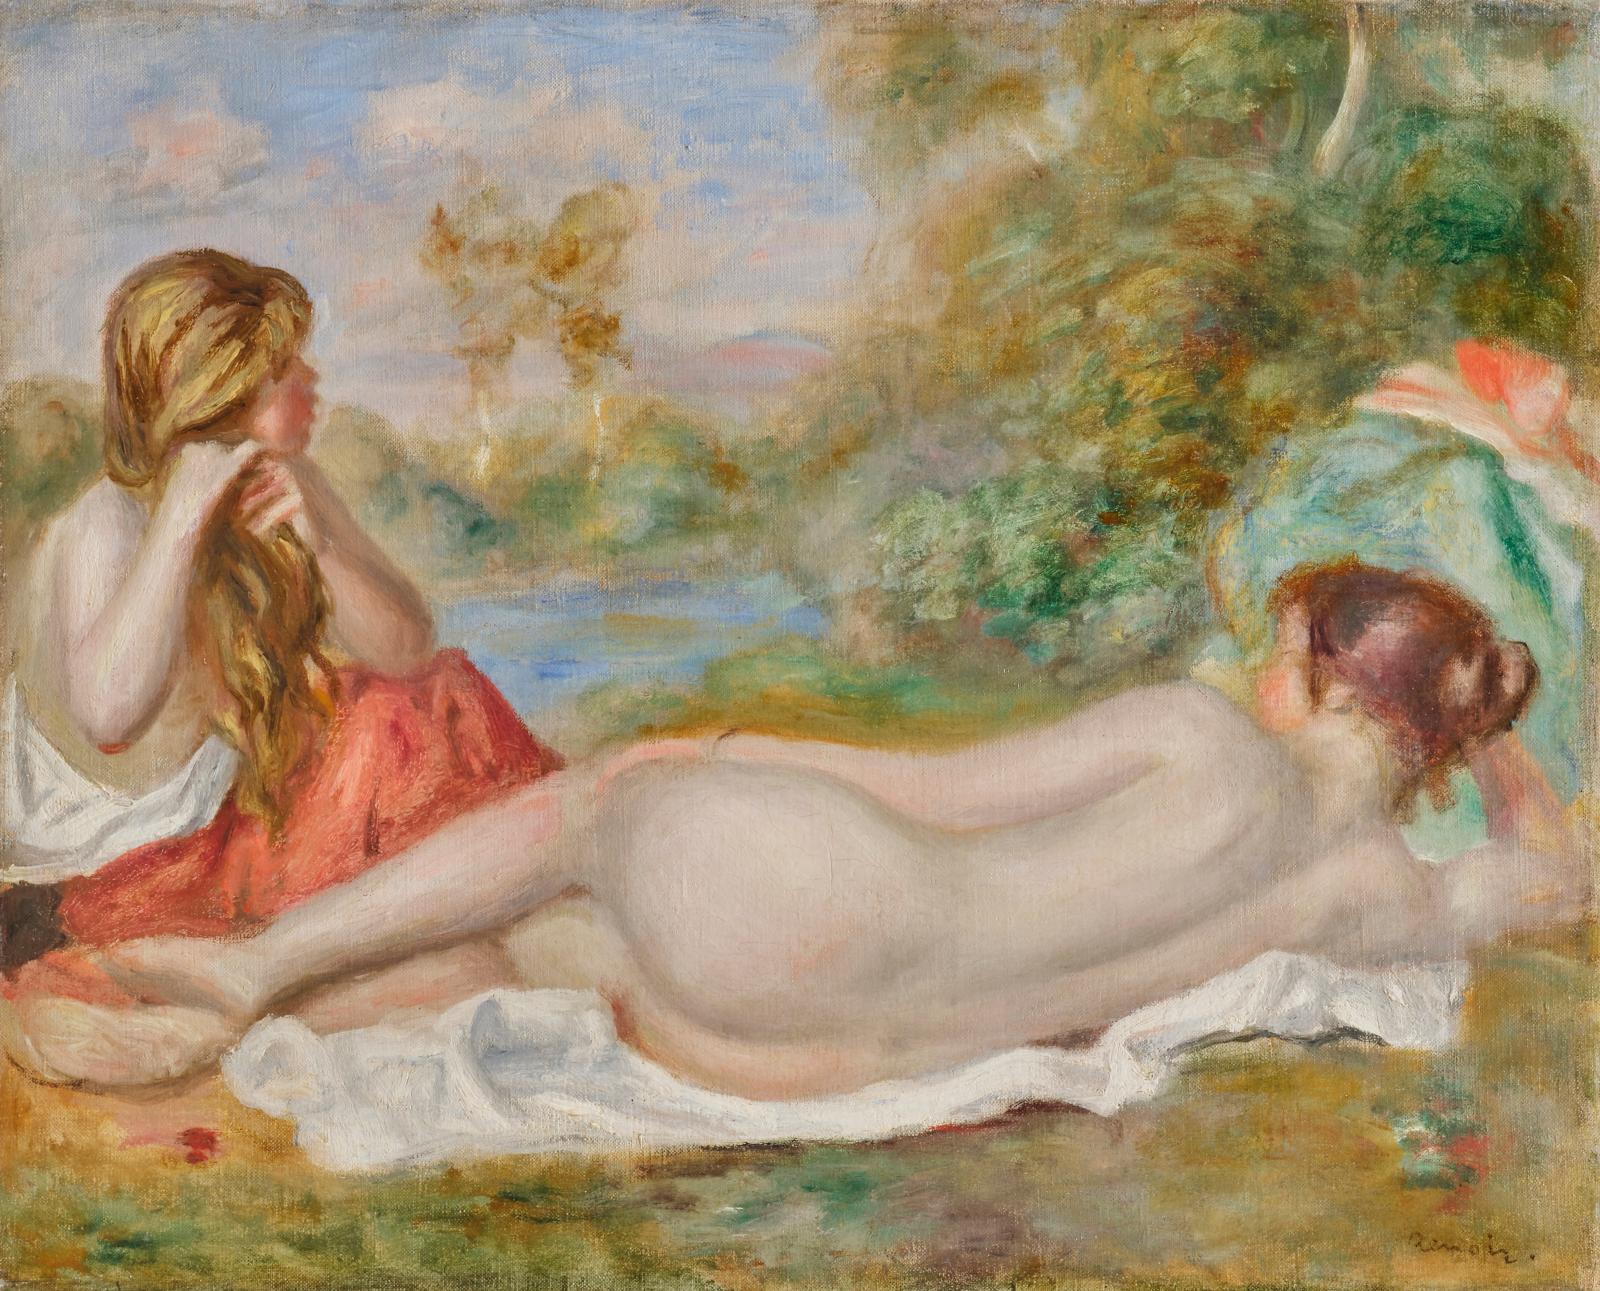 La beauté des baigneuses nacrées de Renoir